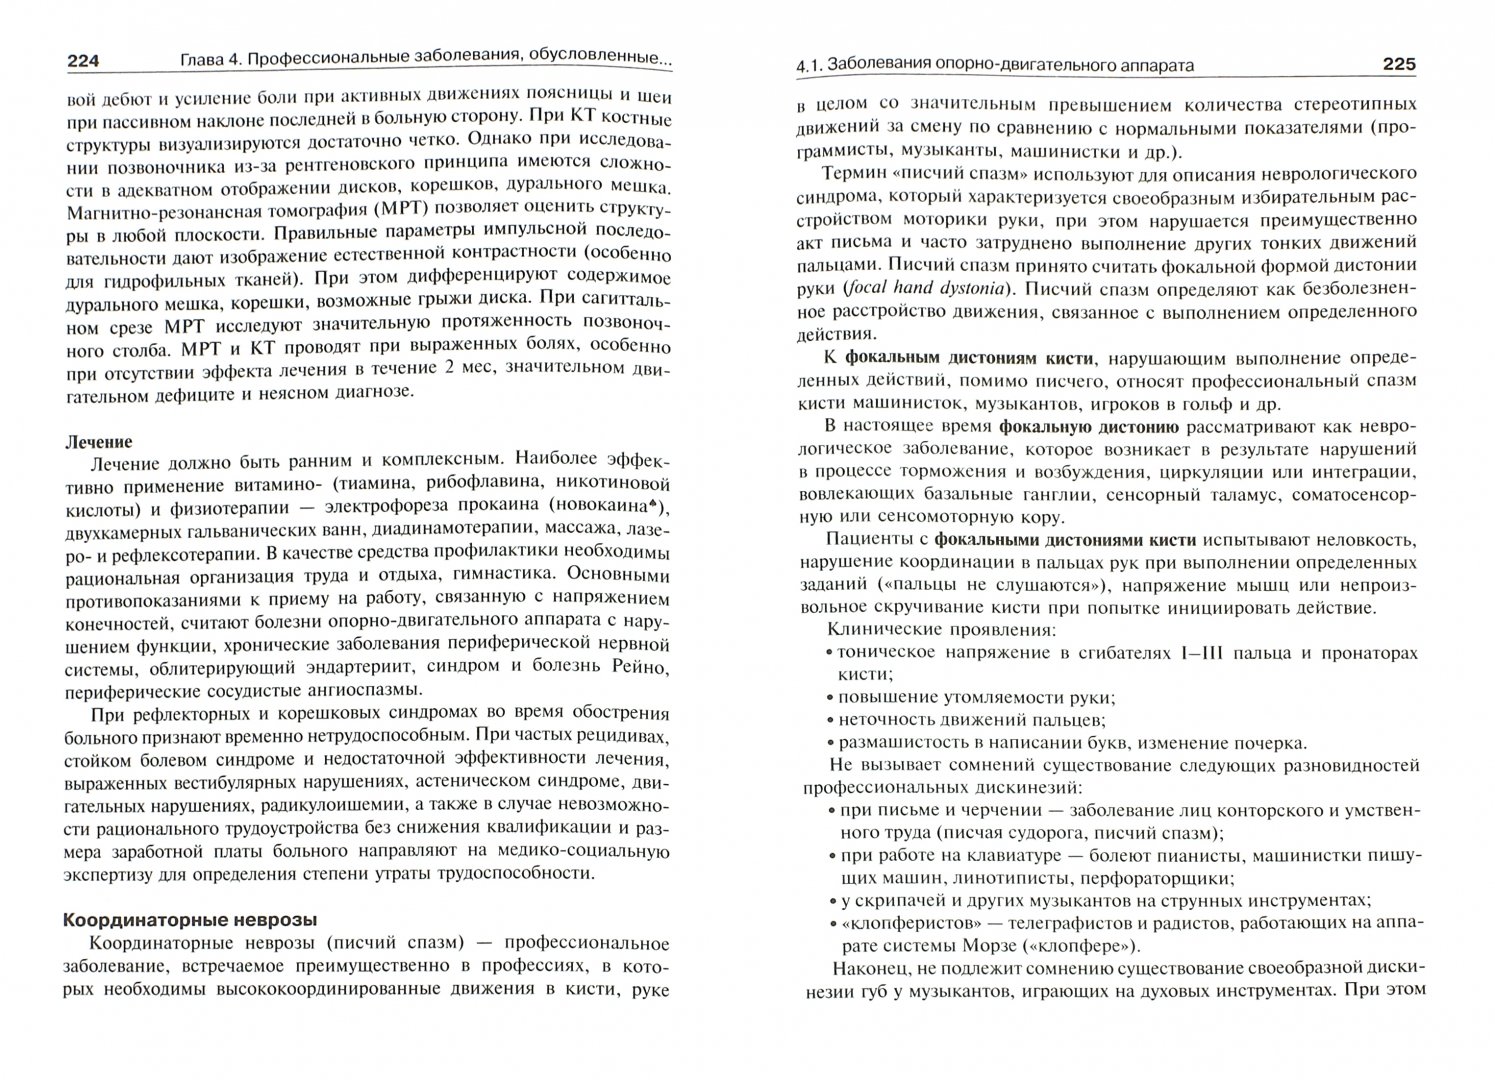 Иллюстрация 1 из 4 для Профессиональные болезни - Мухин, Бабанов, Косарев | Лабиринт - книги. Источник: Лабиринт